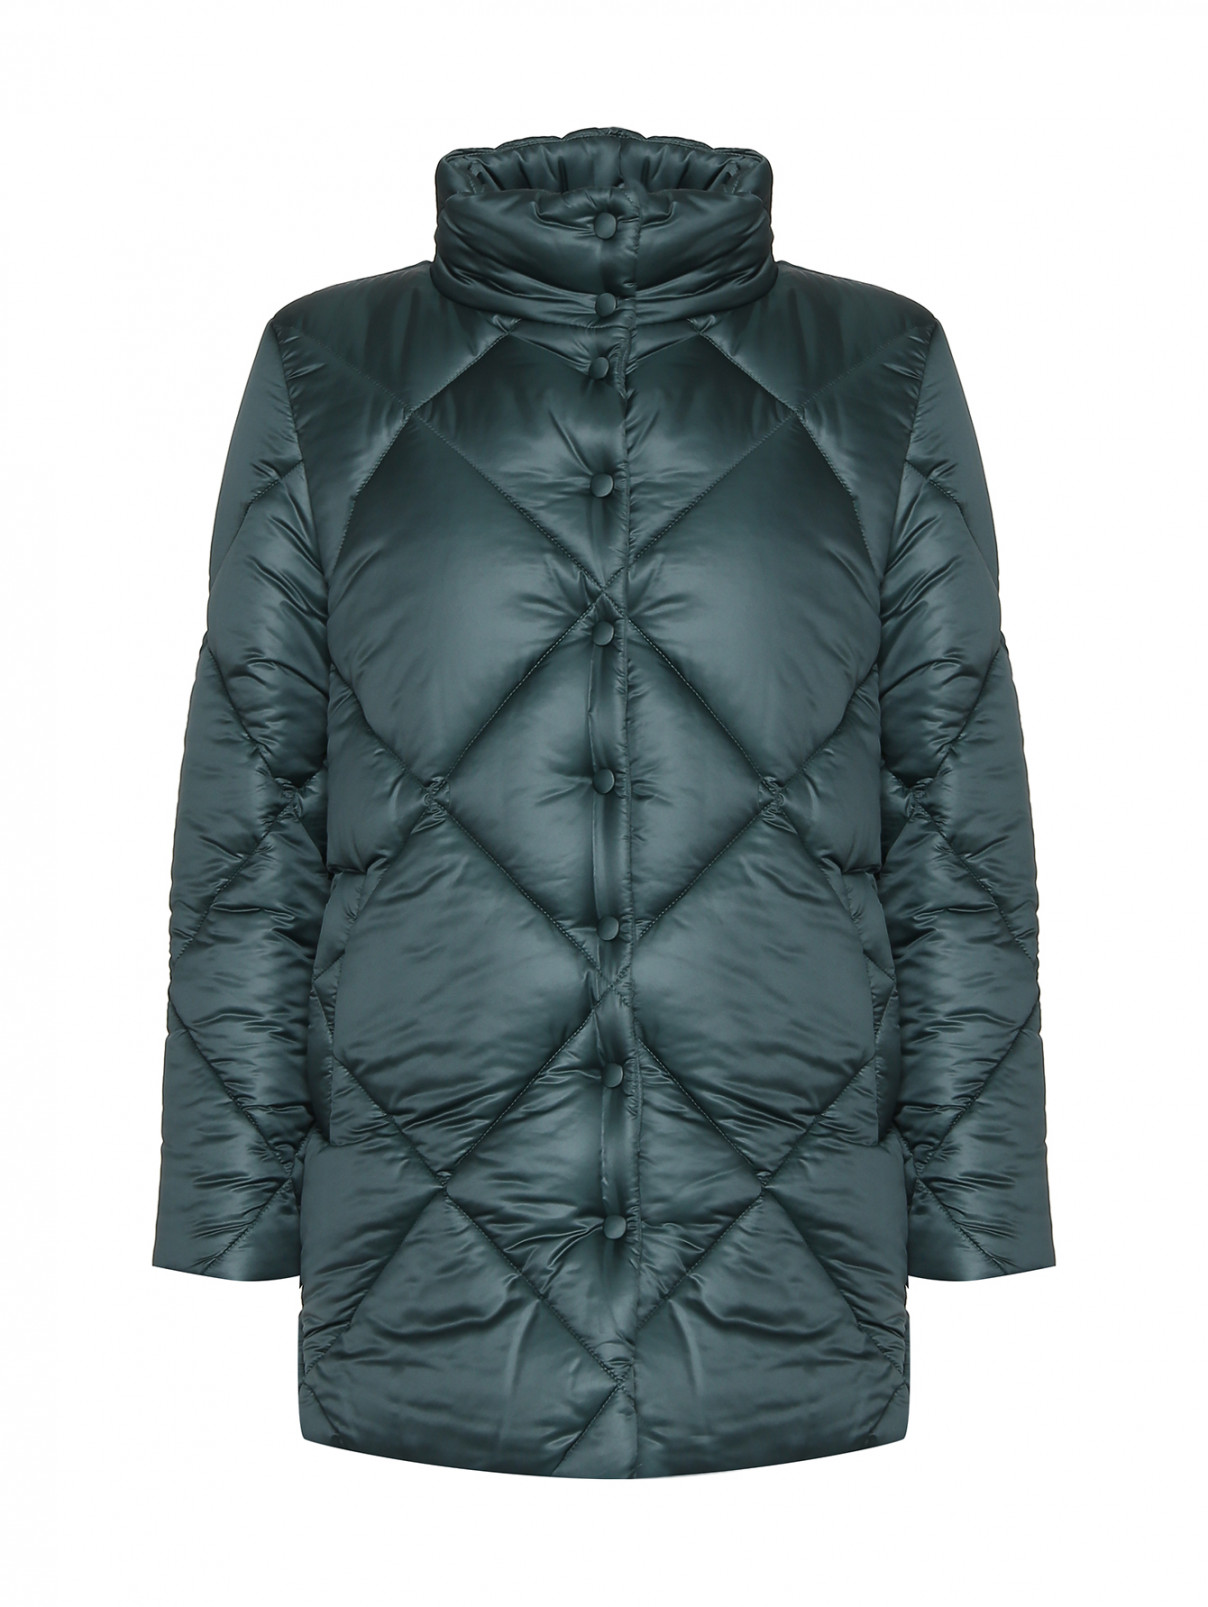 Стеганая куртка с карманами Marina Rinaldi  –  Общий вид  – Цвет:  Зеленый